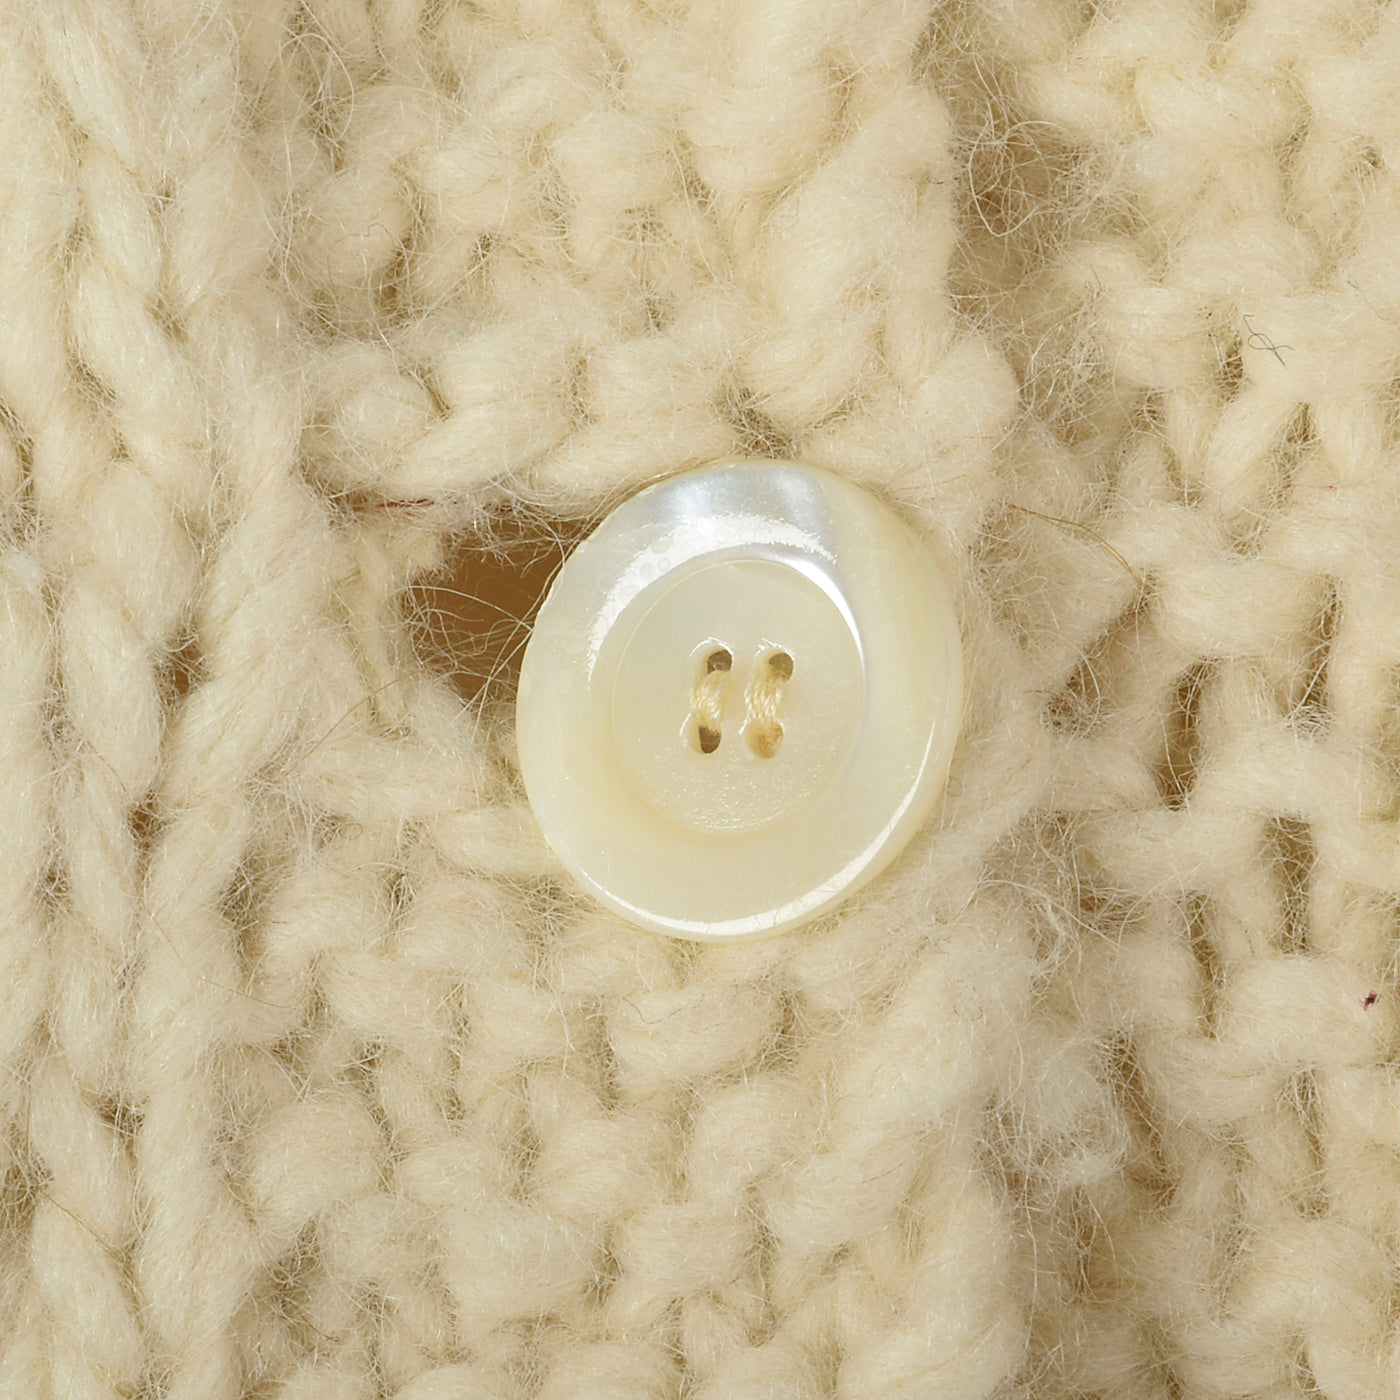 1970s Elizabeth Arden Chunky Knit Sweater Coat